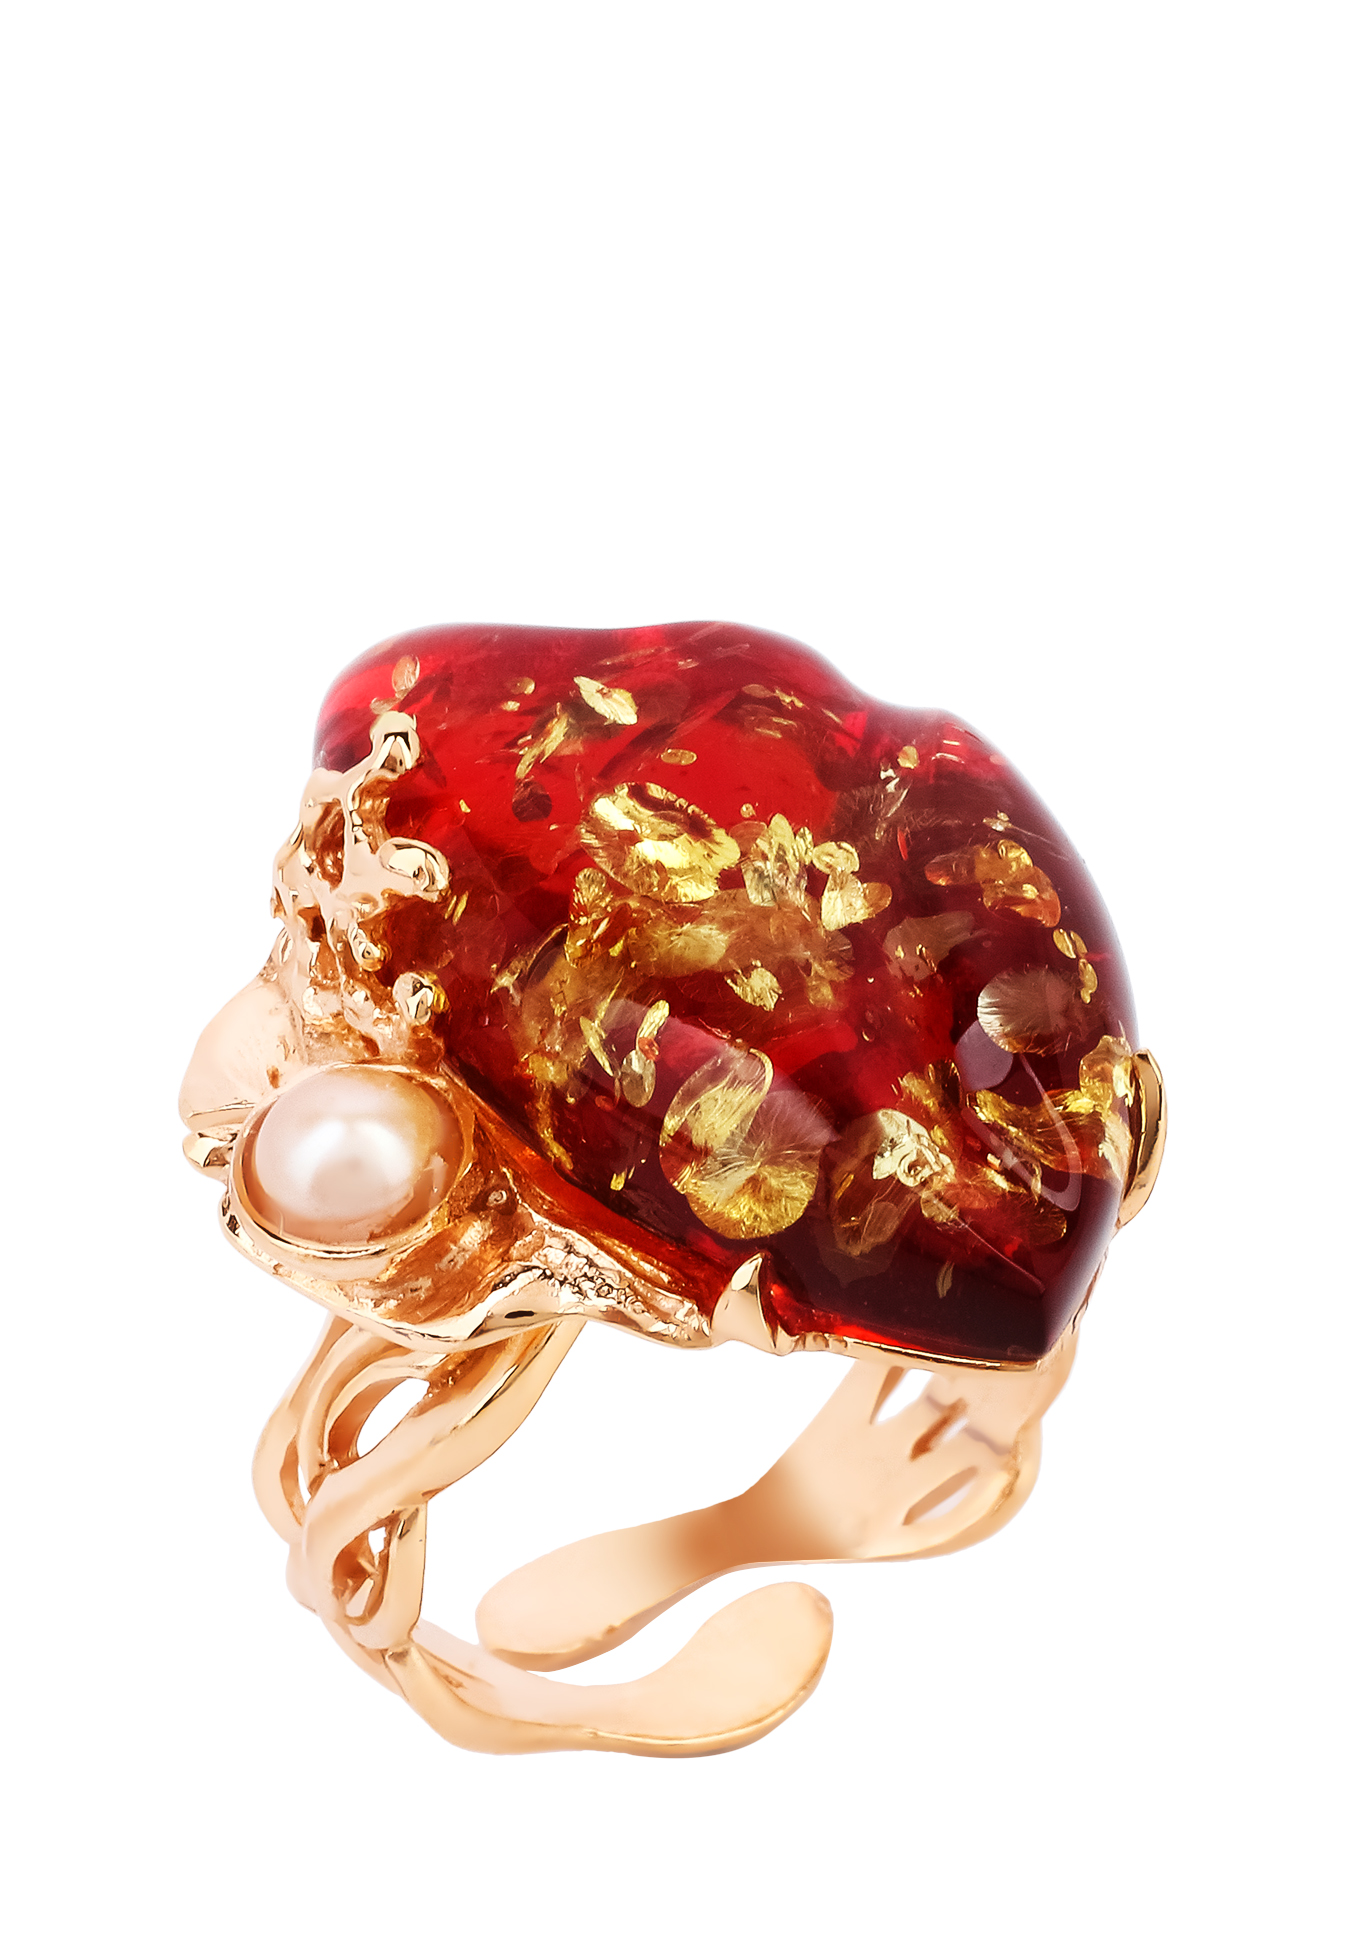 Кольцо серебряное "Чувственная грация" Янтарная волна, цвет красный перстень - фото 3